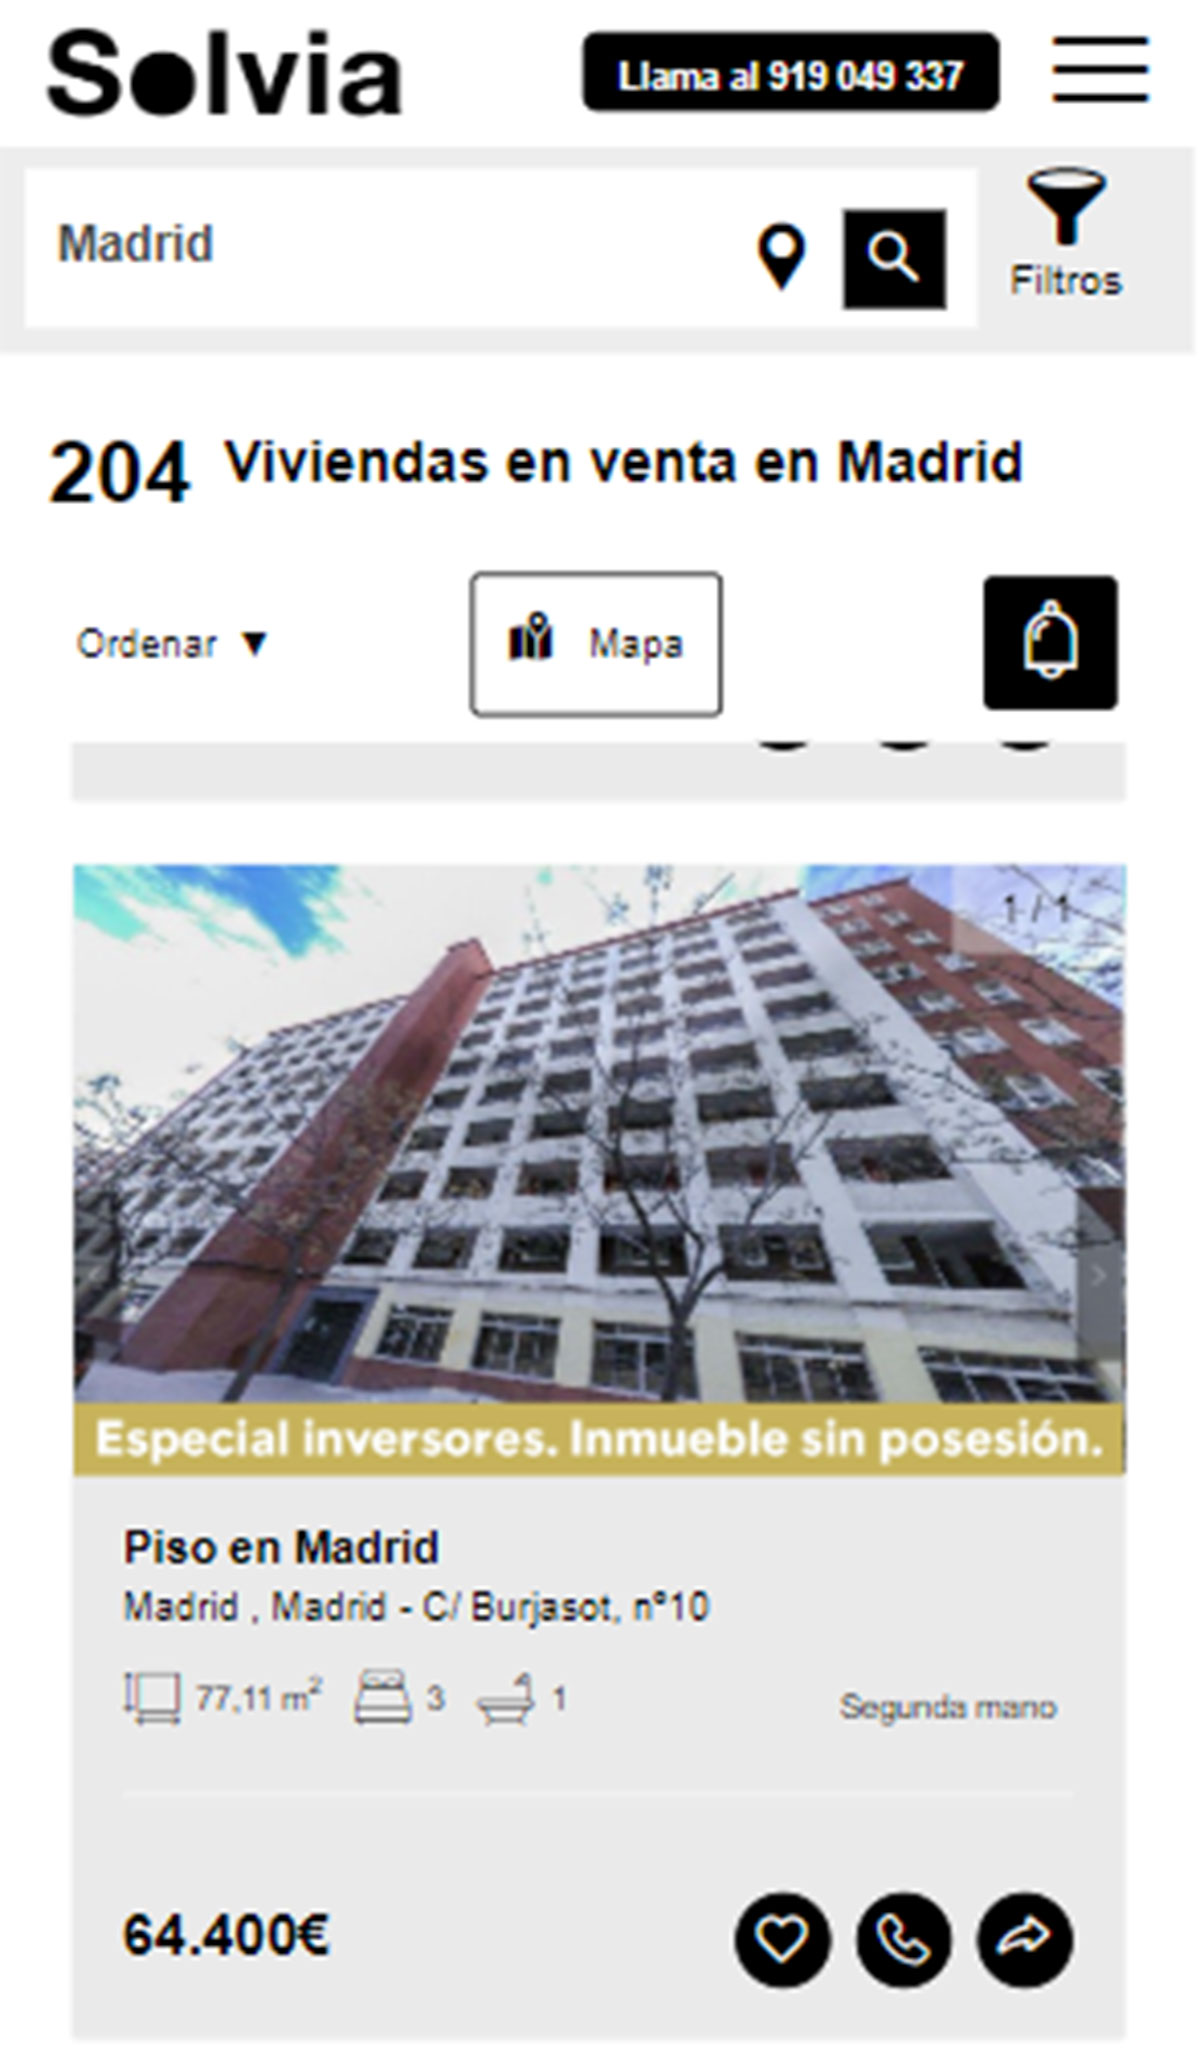 Piso en la ciudad de Madrid por 64.400 euros